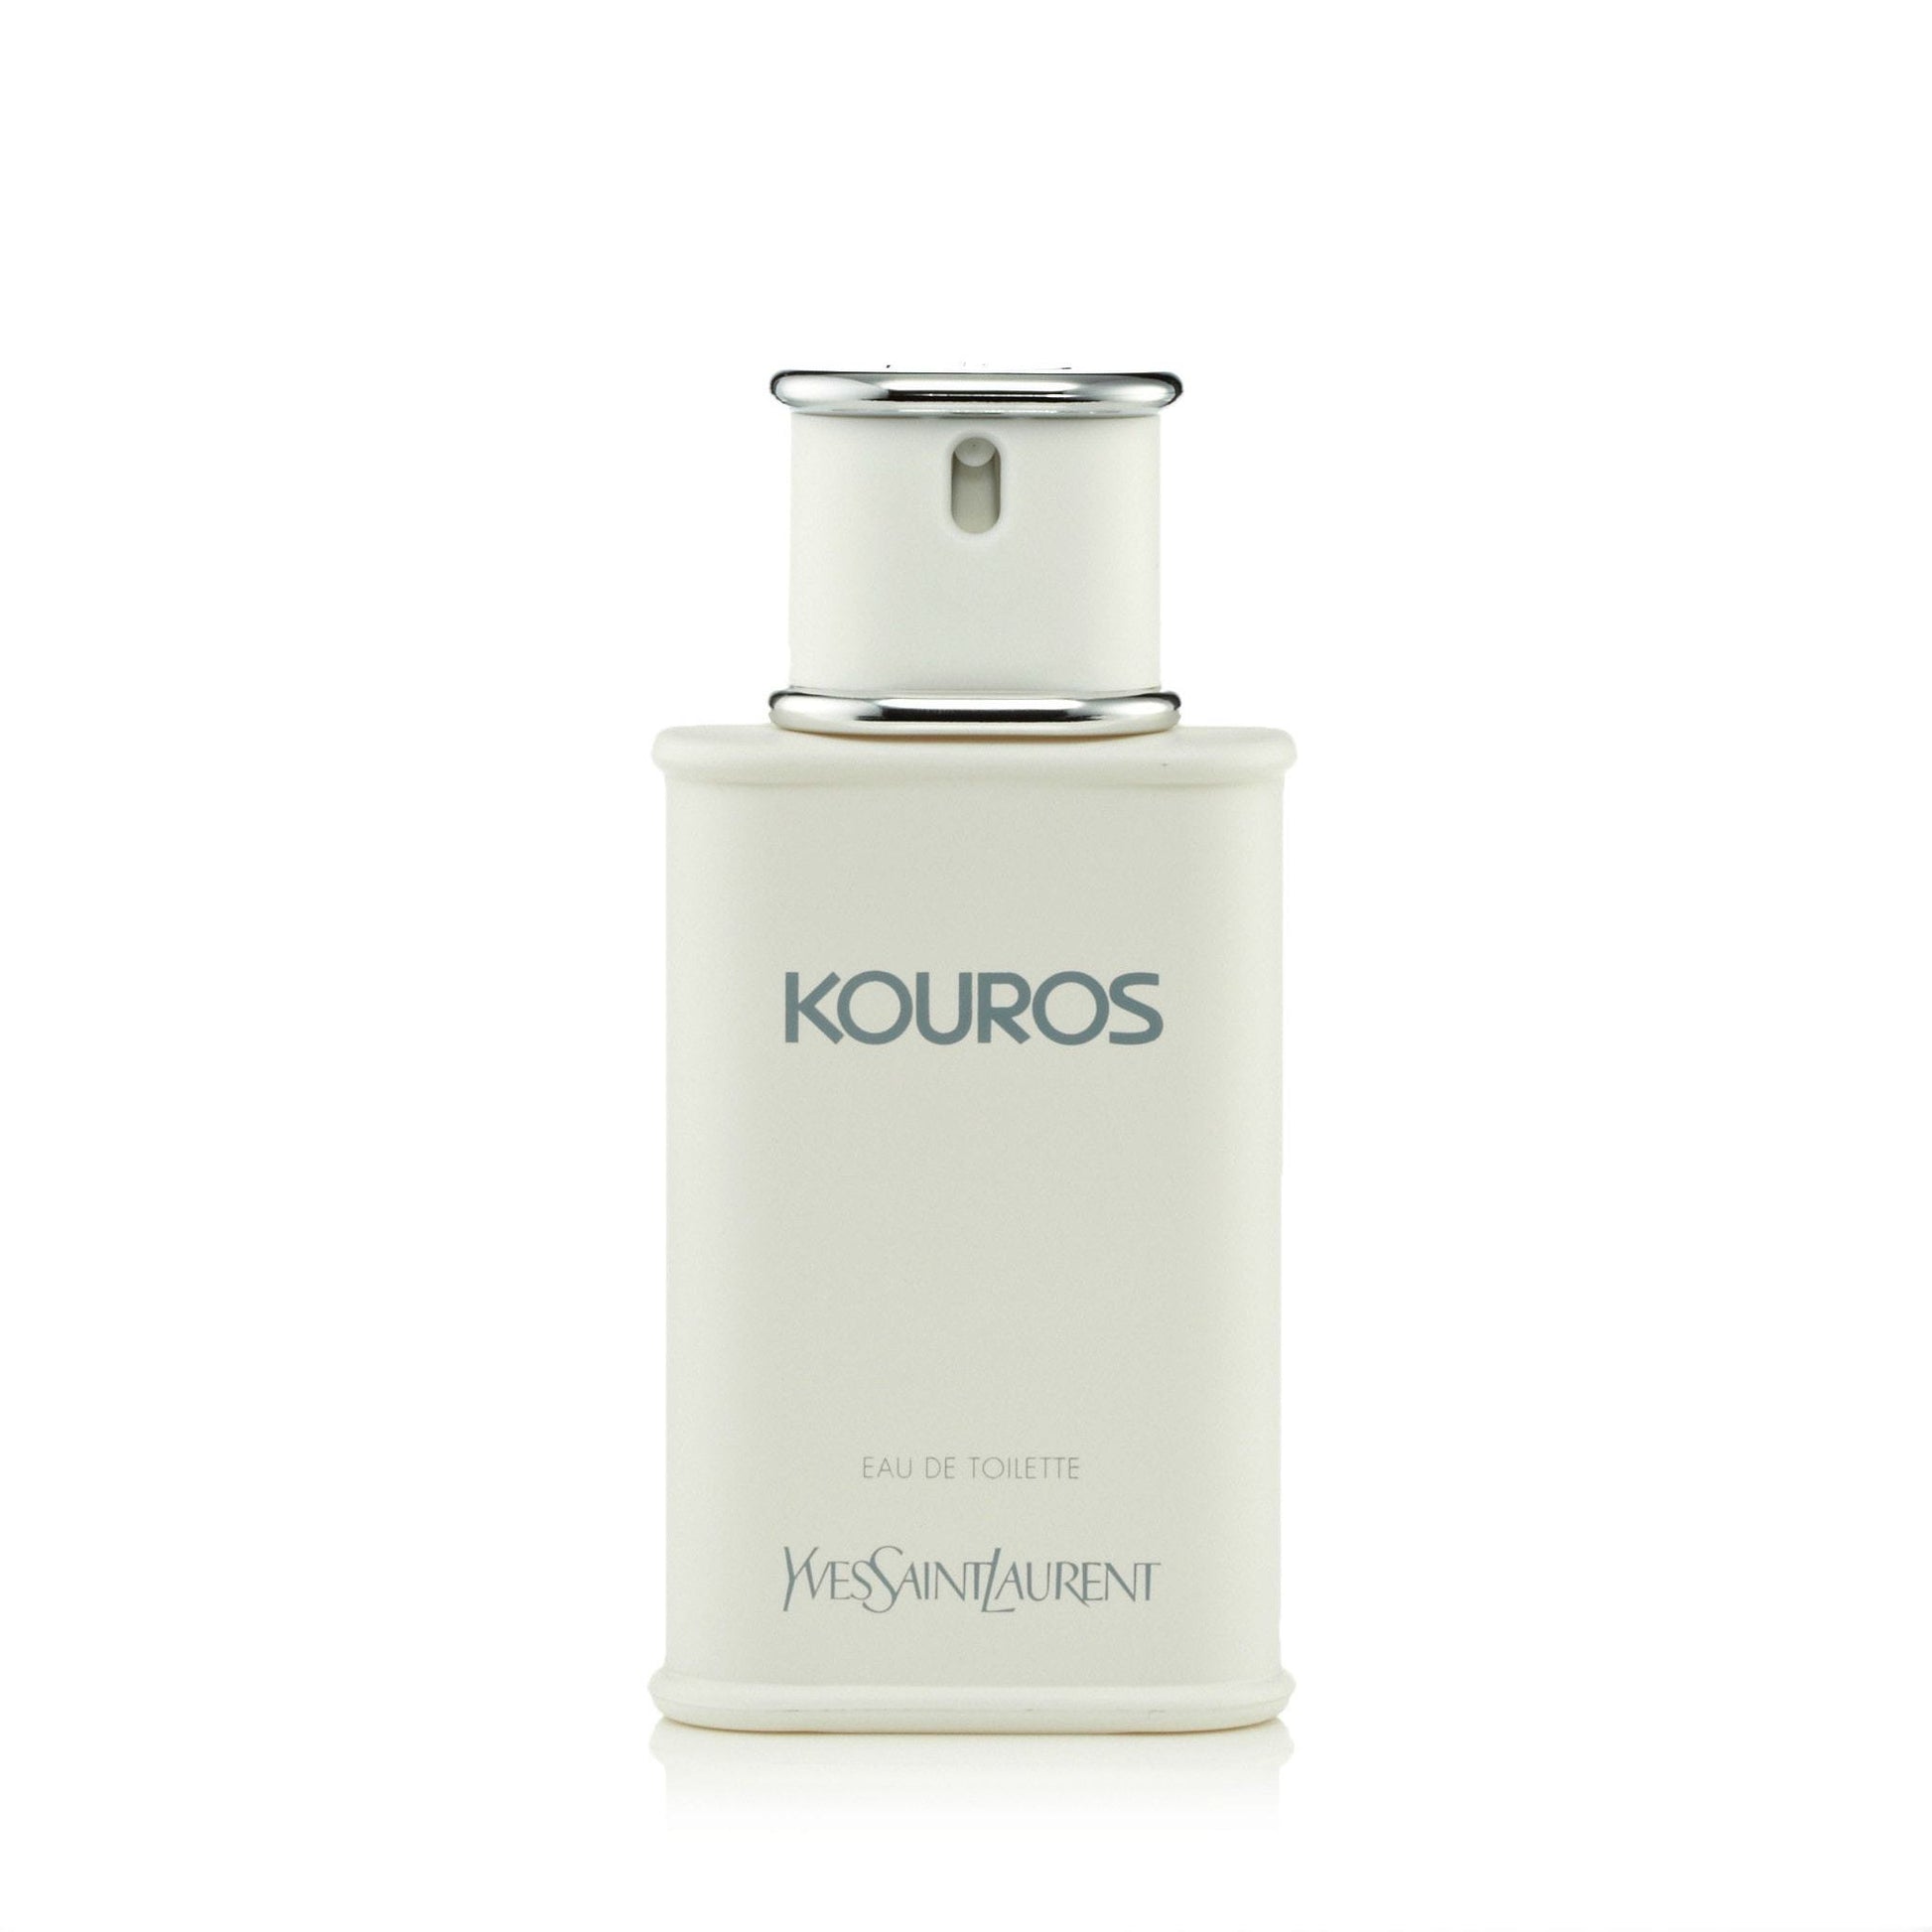 Kouros Eau de Toilette Spray for Men by Yves Saint Laurent, Product image 3